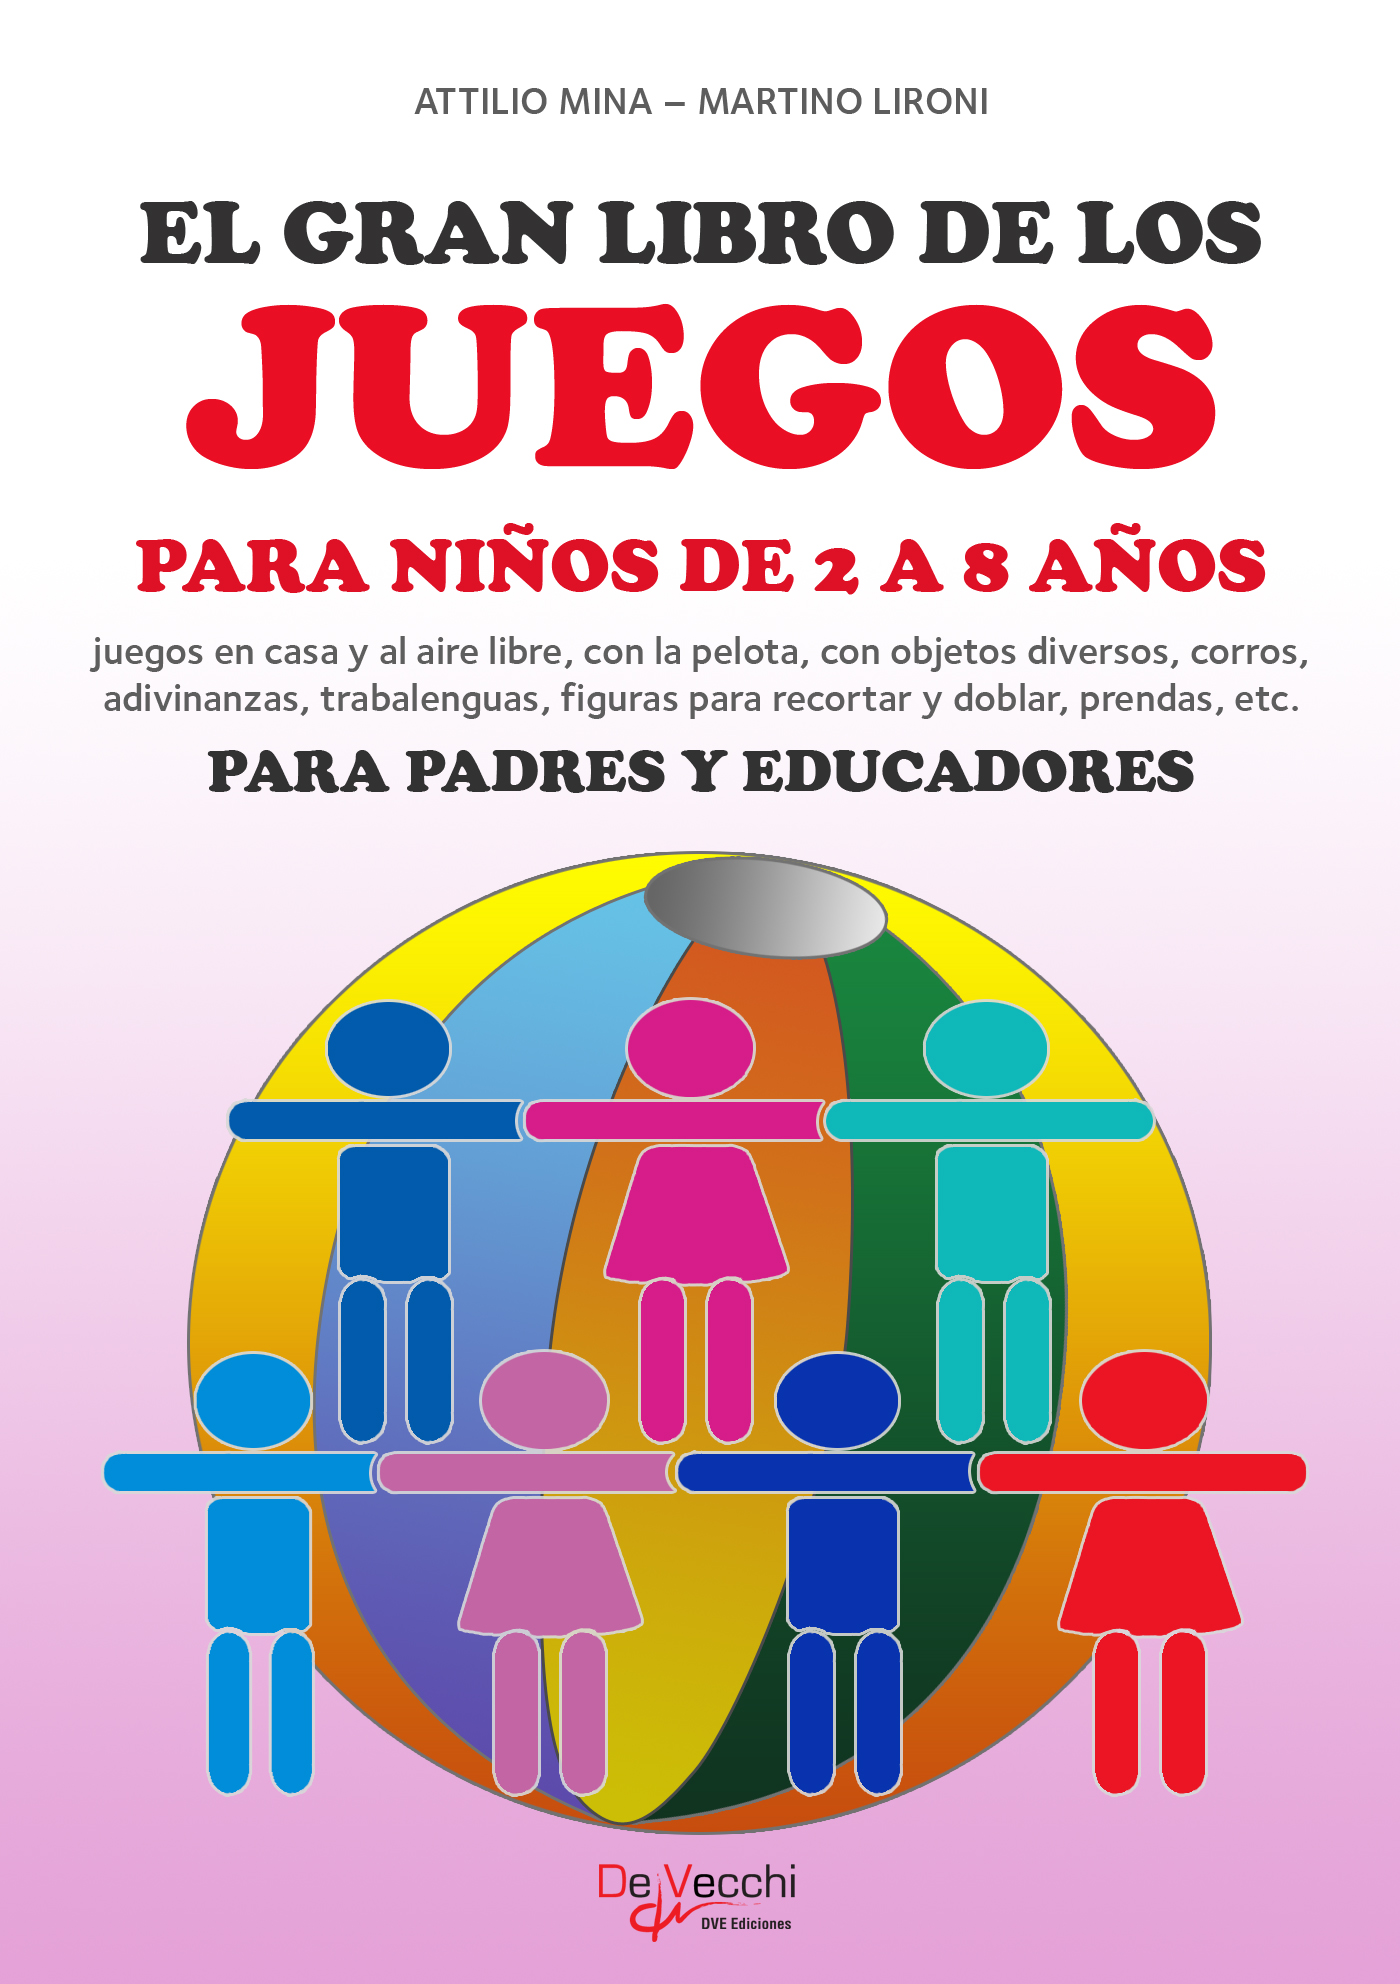 El gran libro de los juegos para niños by: Attilio Mina - 9781639190997